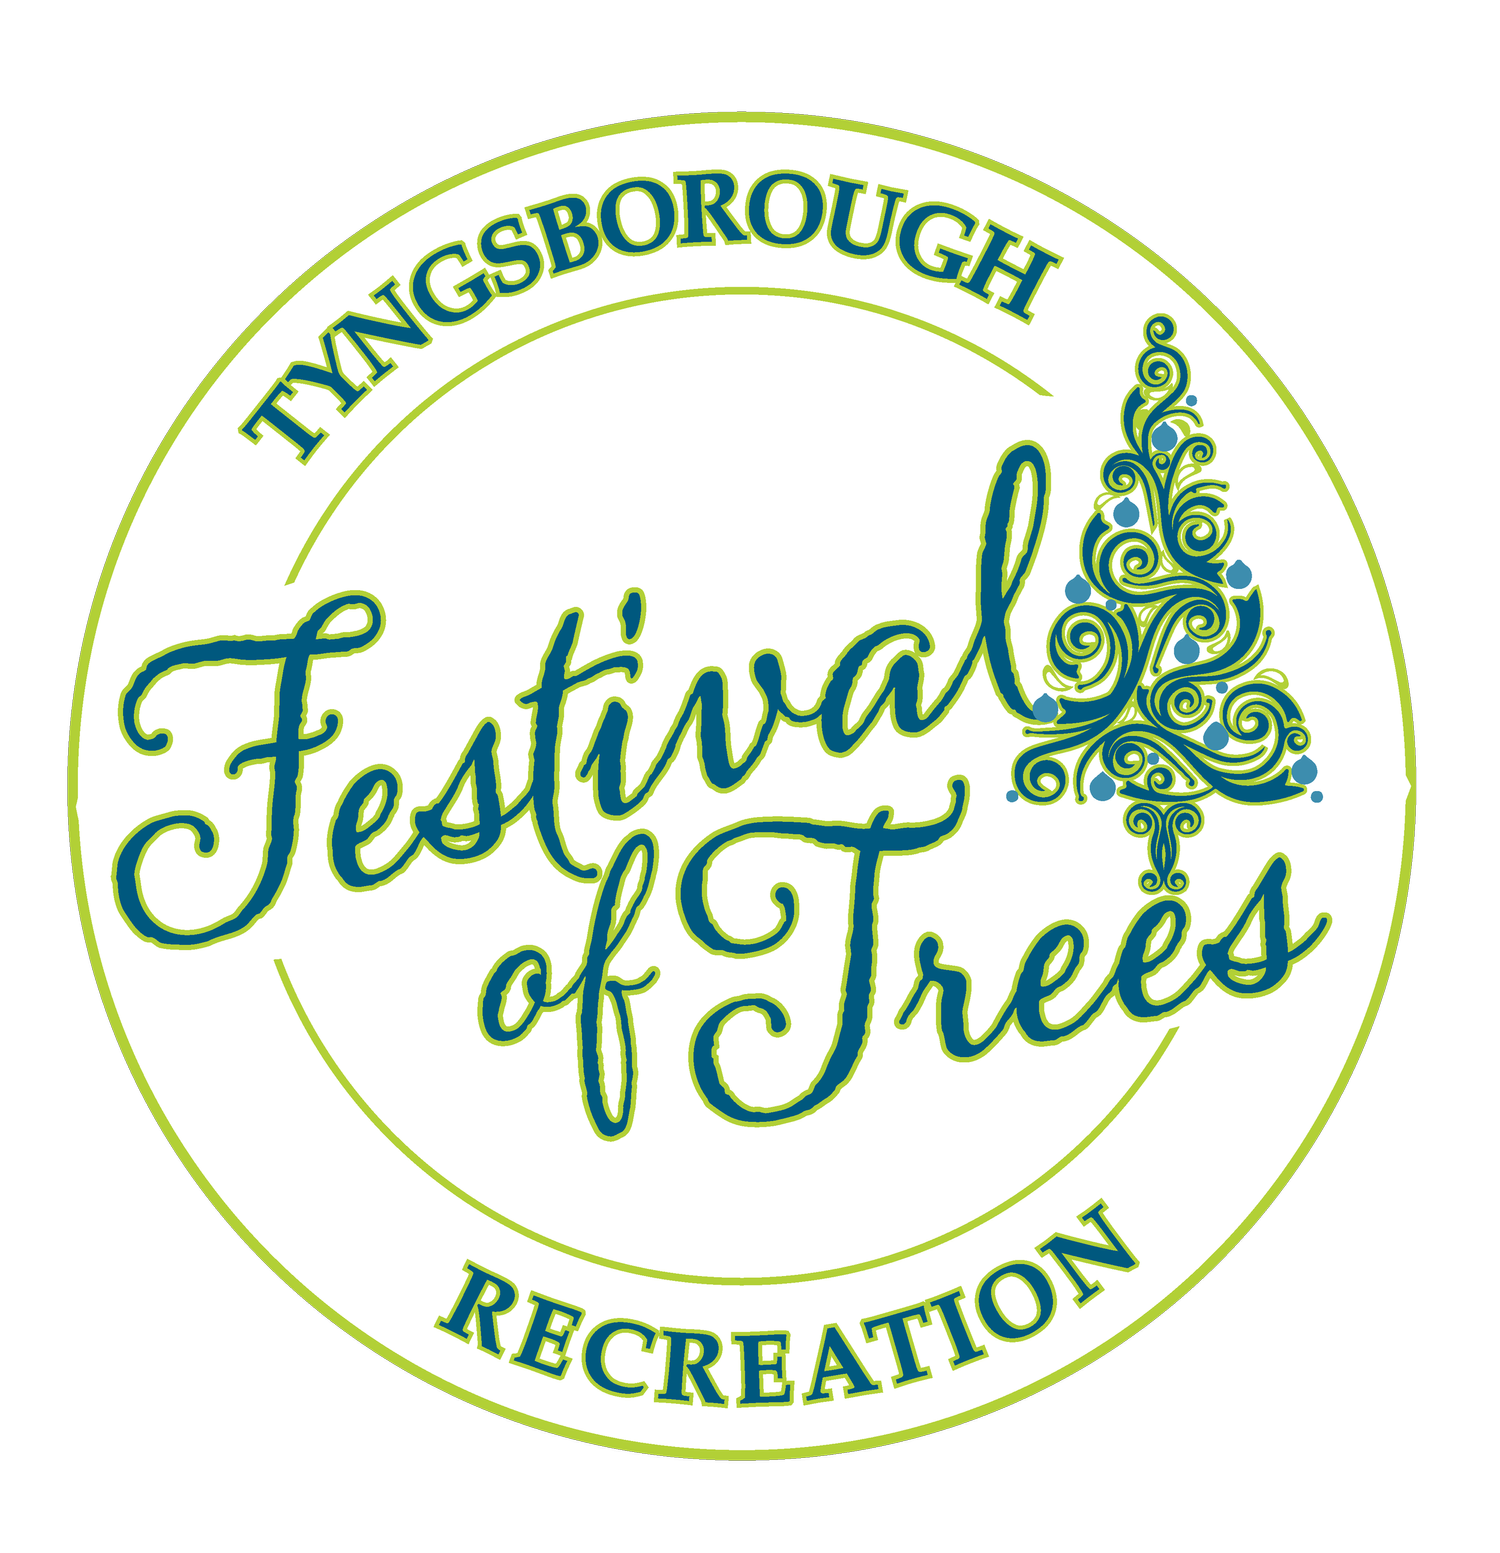 Tyngsborough Festival of Trees